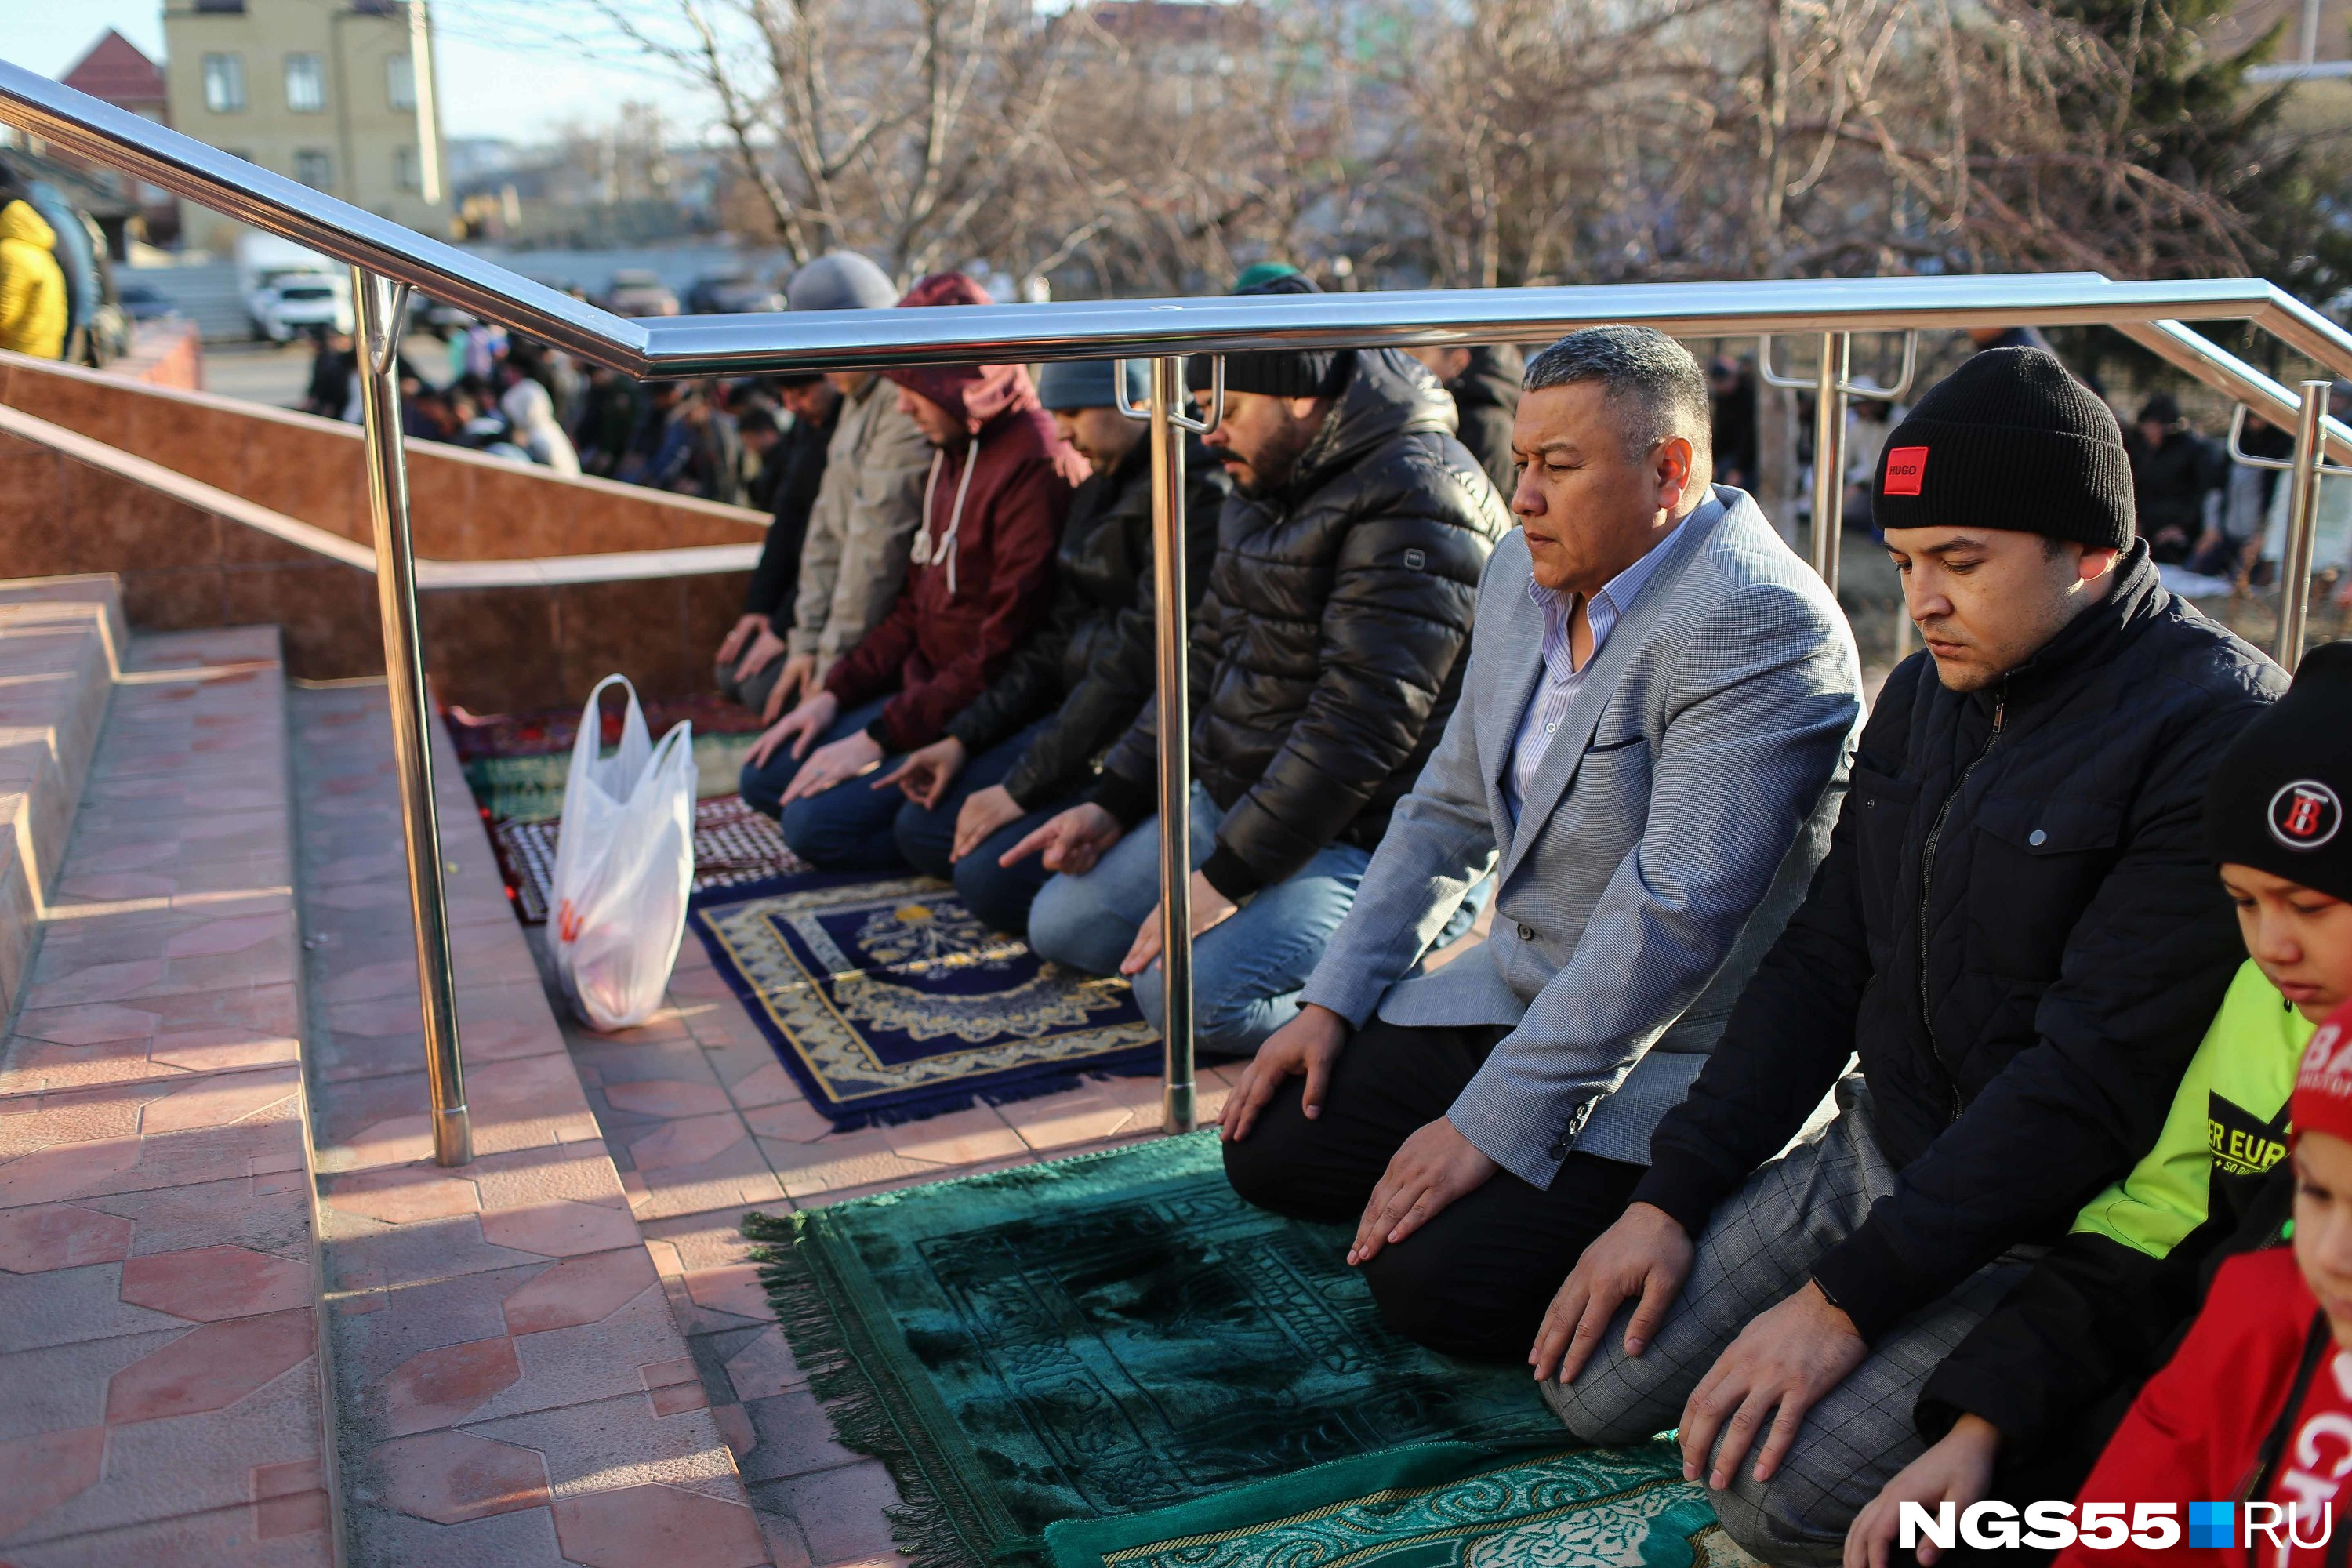 Мусульмане читают молитву, стоя на коленях. Перед собой у них принято стелить специальный коврик